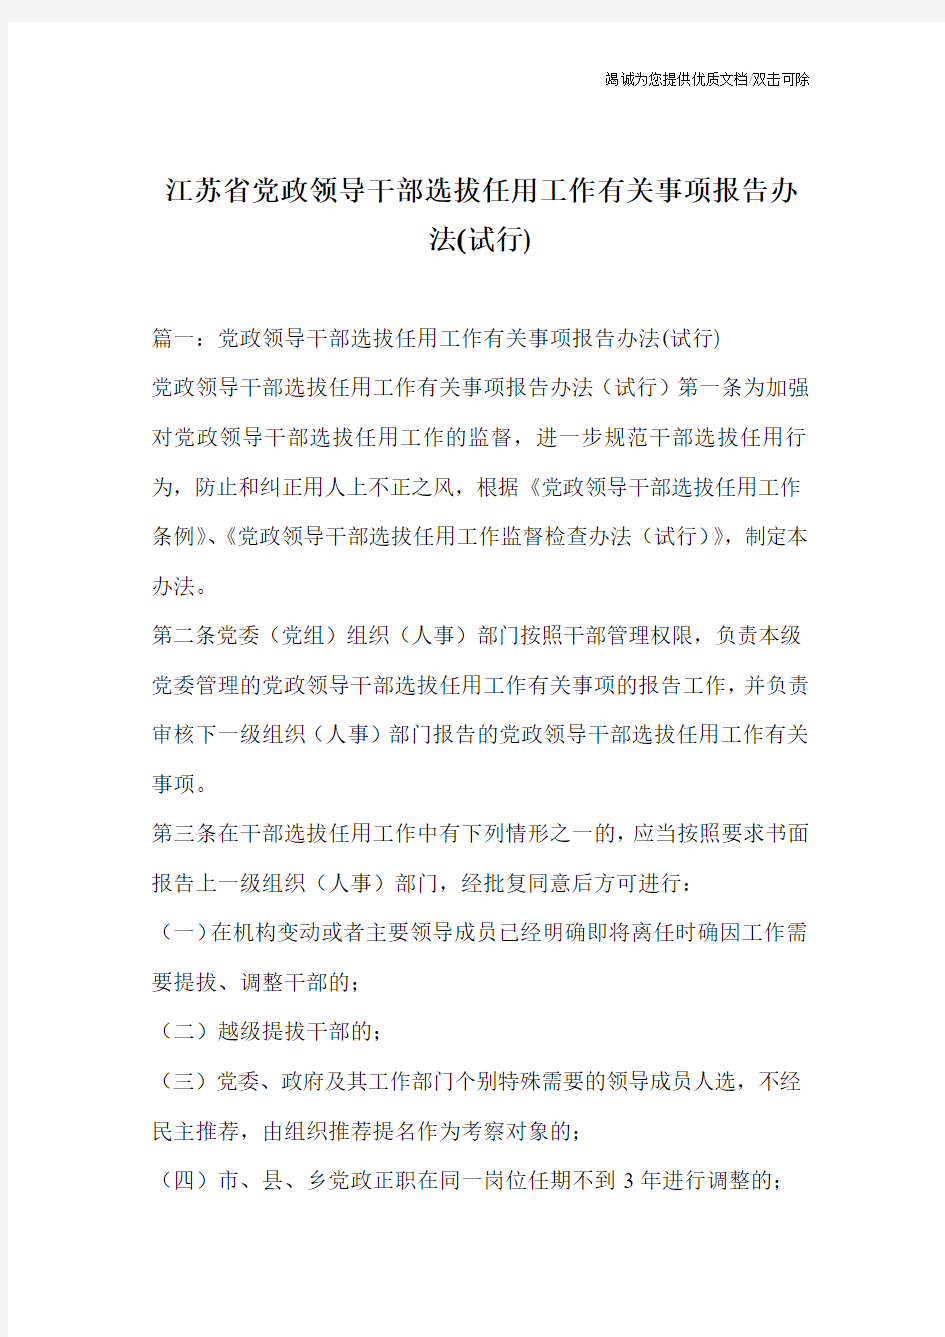 江苏省党政领导干部选拔任用工作有关事项报告办法(试行)